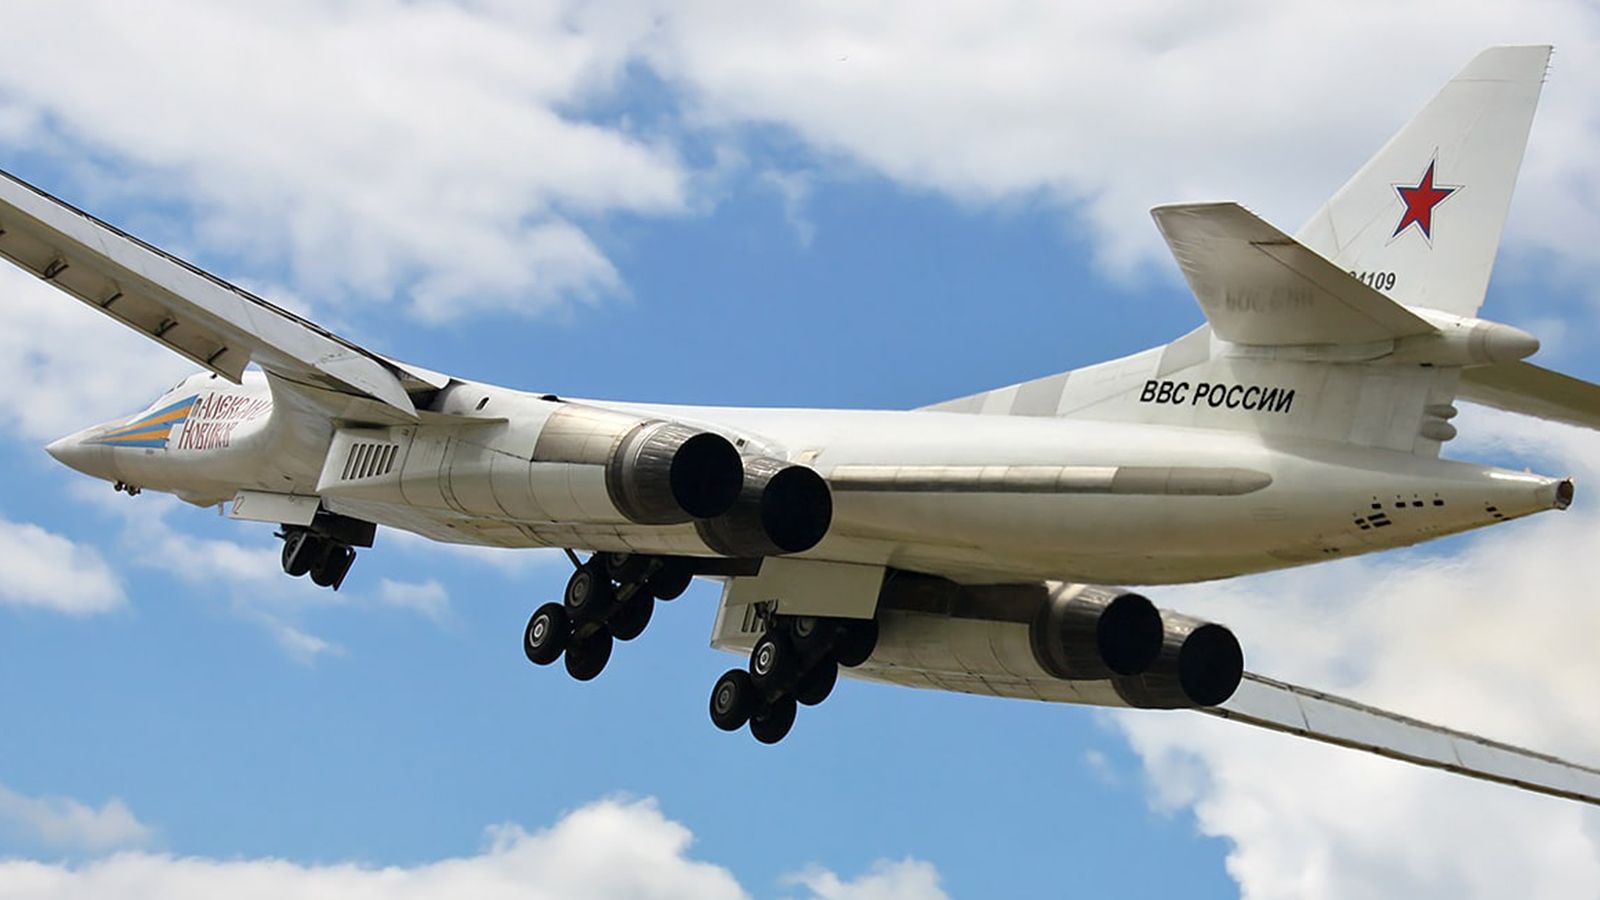 ОАК: обновленный ракетоносец Ту-160М поступит в распоряжение ВС РФ до конца 2022 года